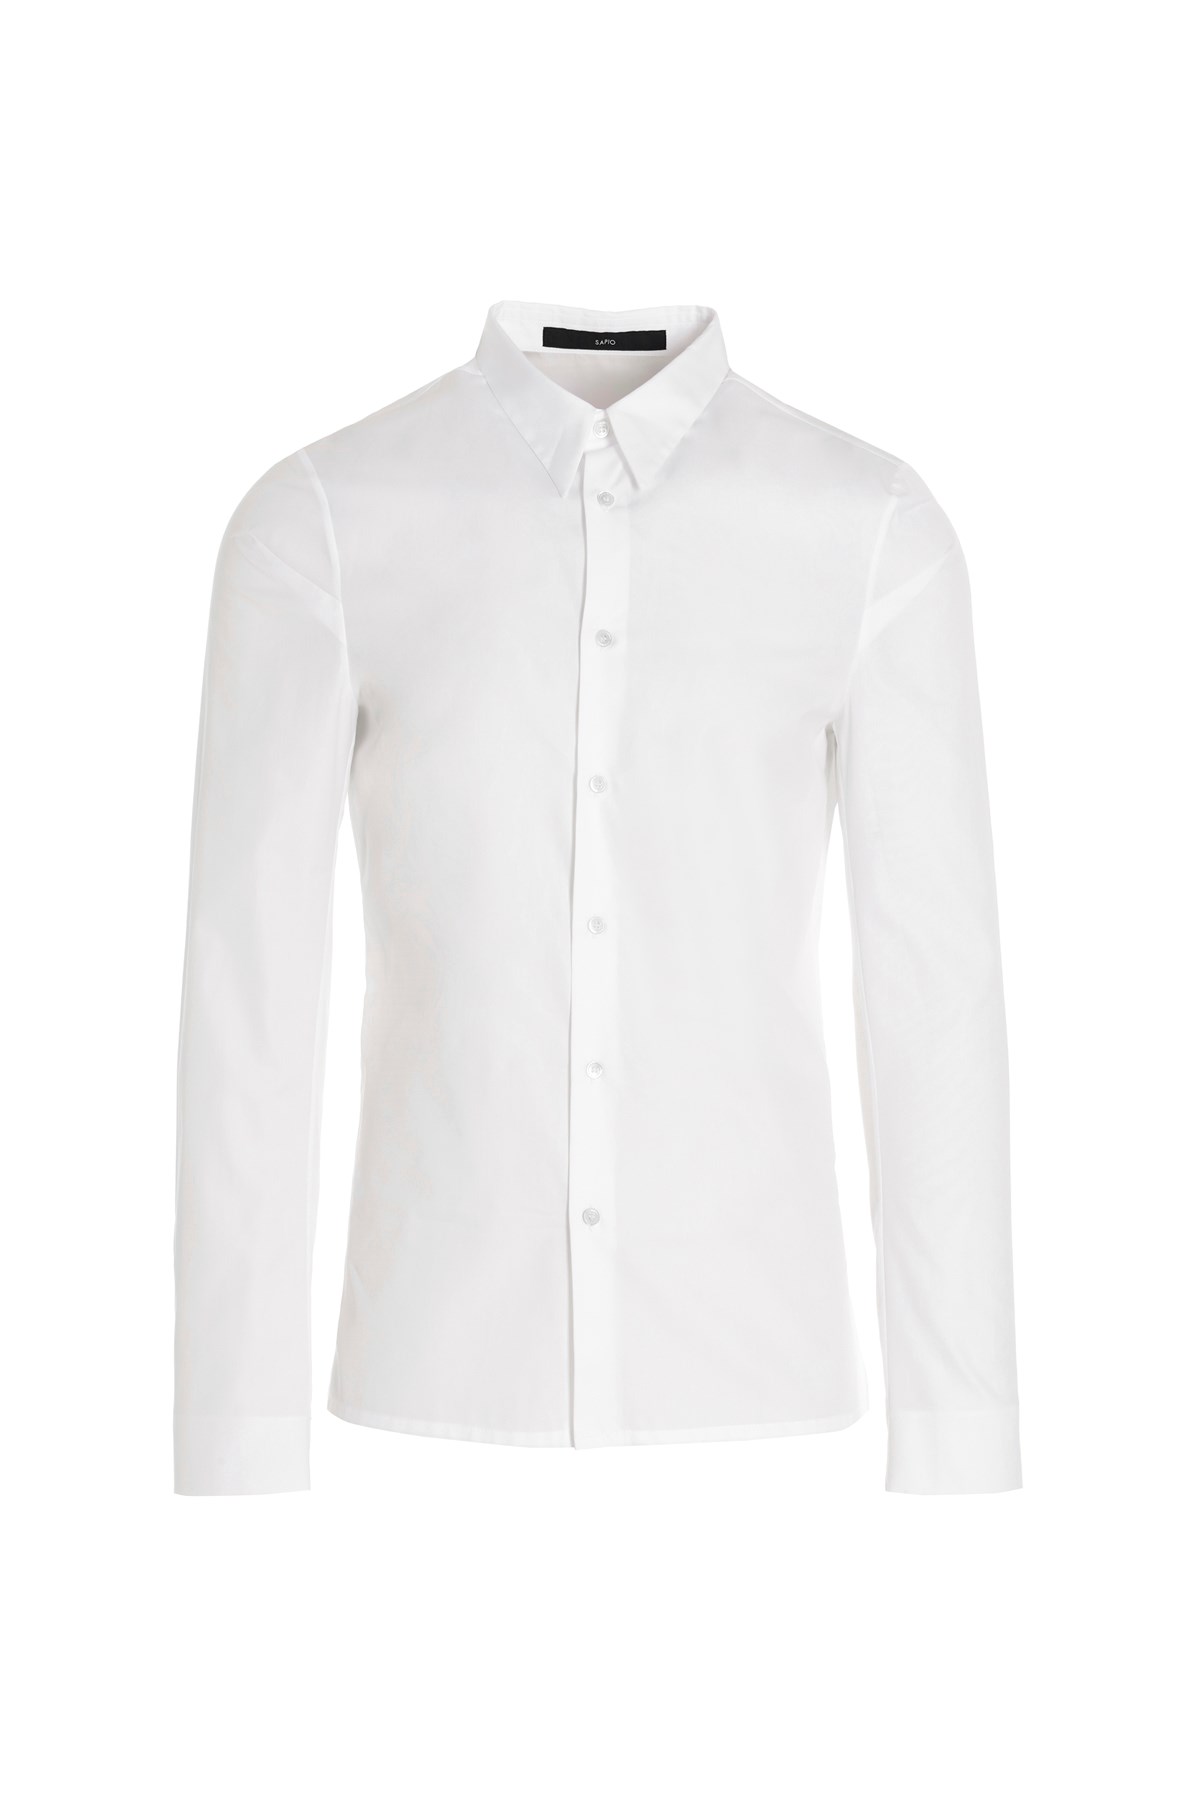 SAPIO Cotton Shirt